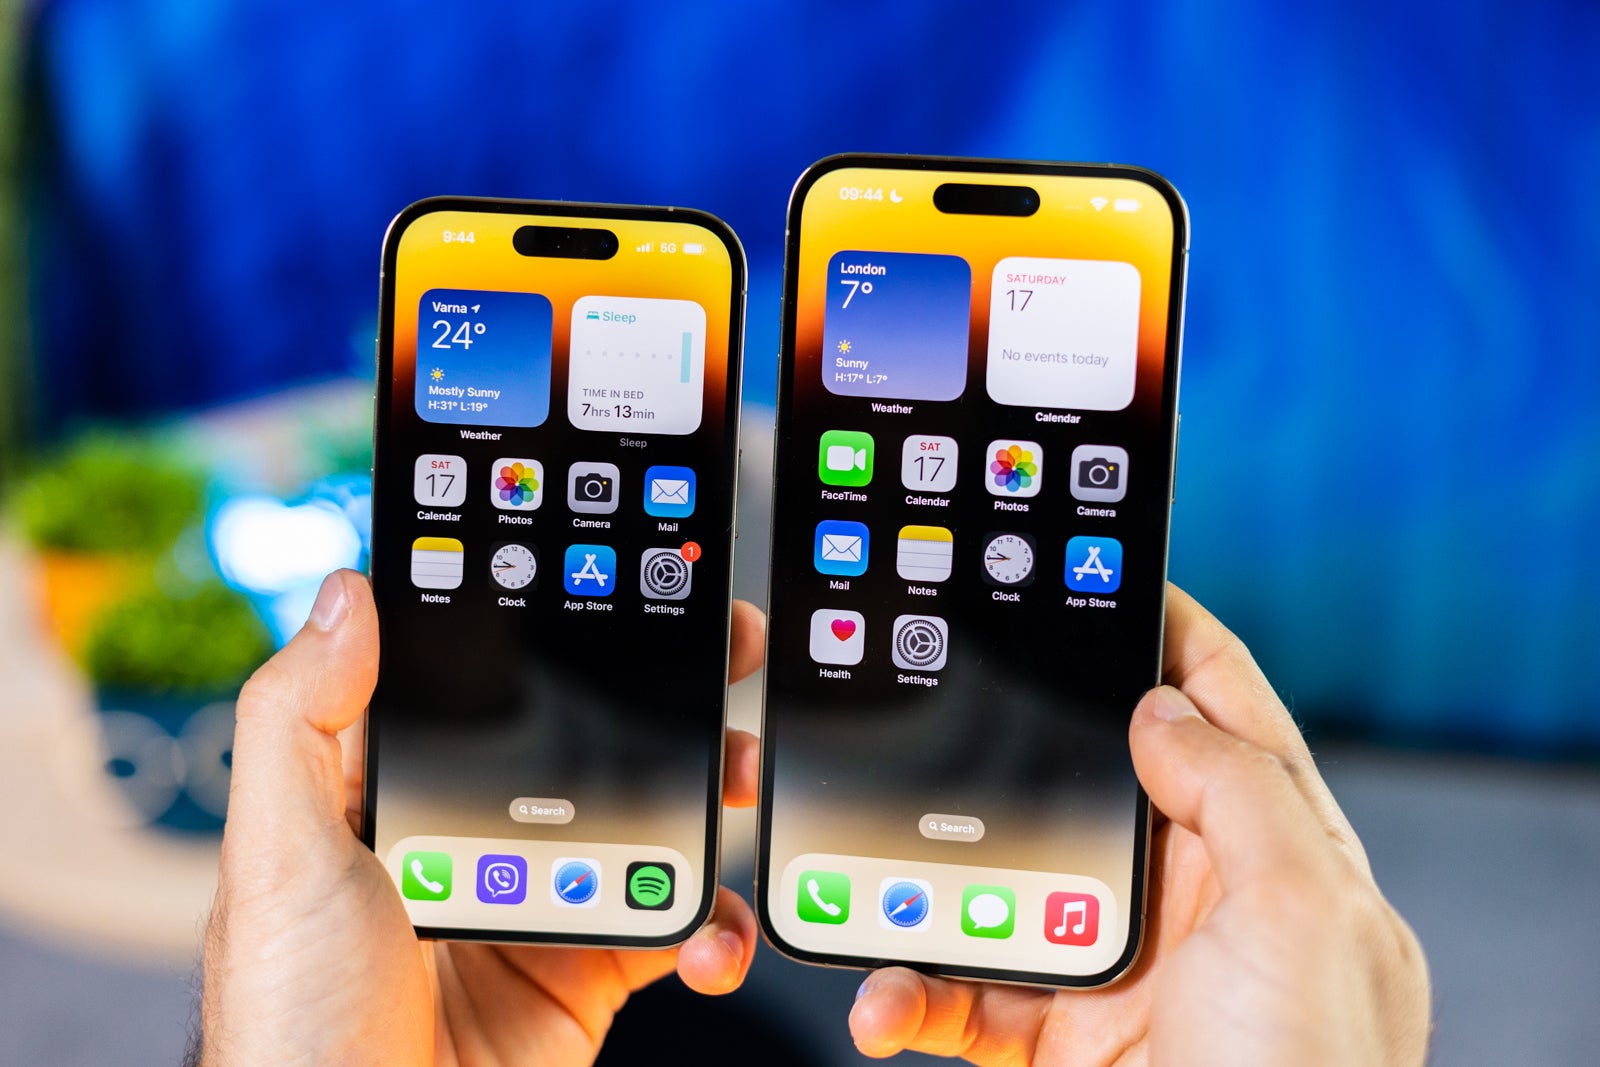 (Credito immagine - PhoneArena) iPhone 14 Pro vs 14 Pro Max - Apple iPhone 14 Pro Max vs iPhone 14 Pro: scegli le tue dimensioni!